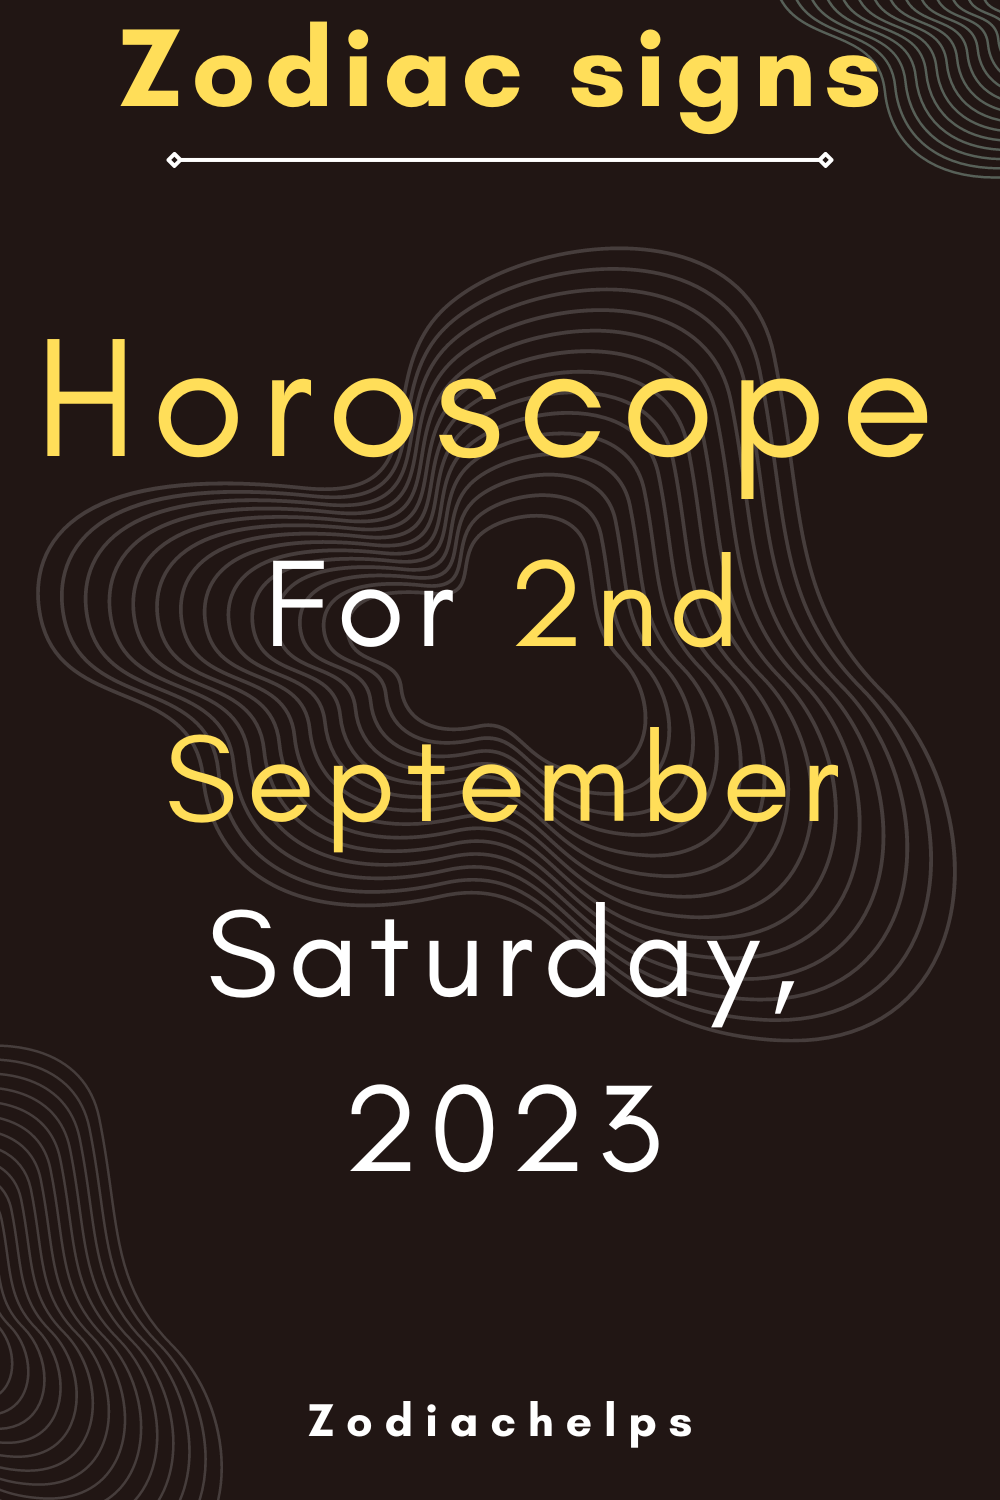 Horoscope for 2nd September Saturday, 2023